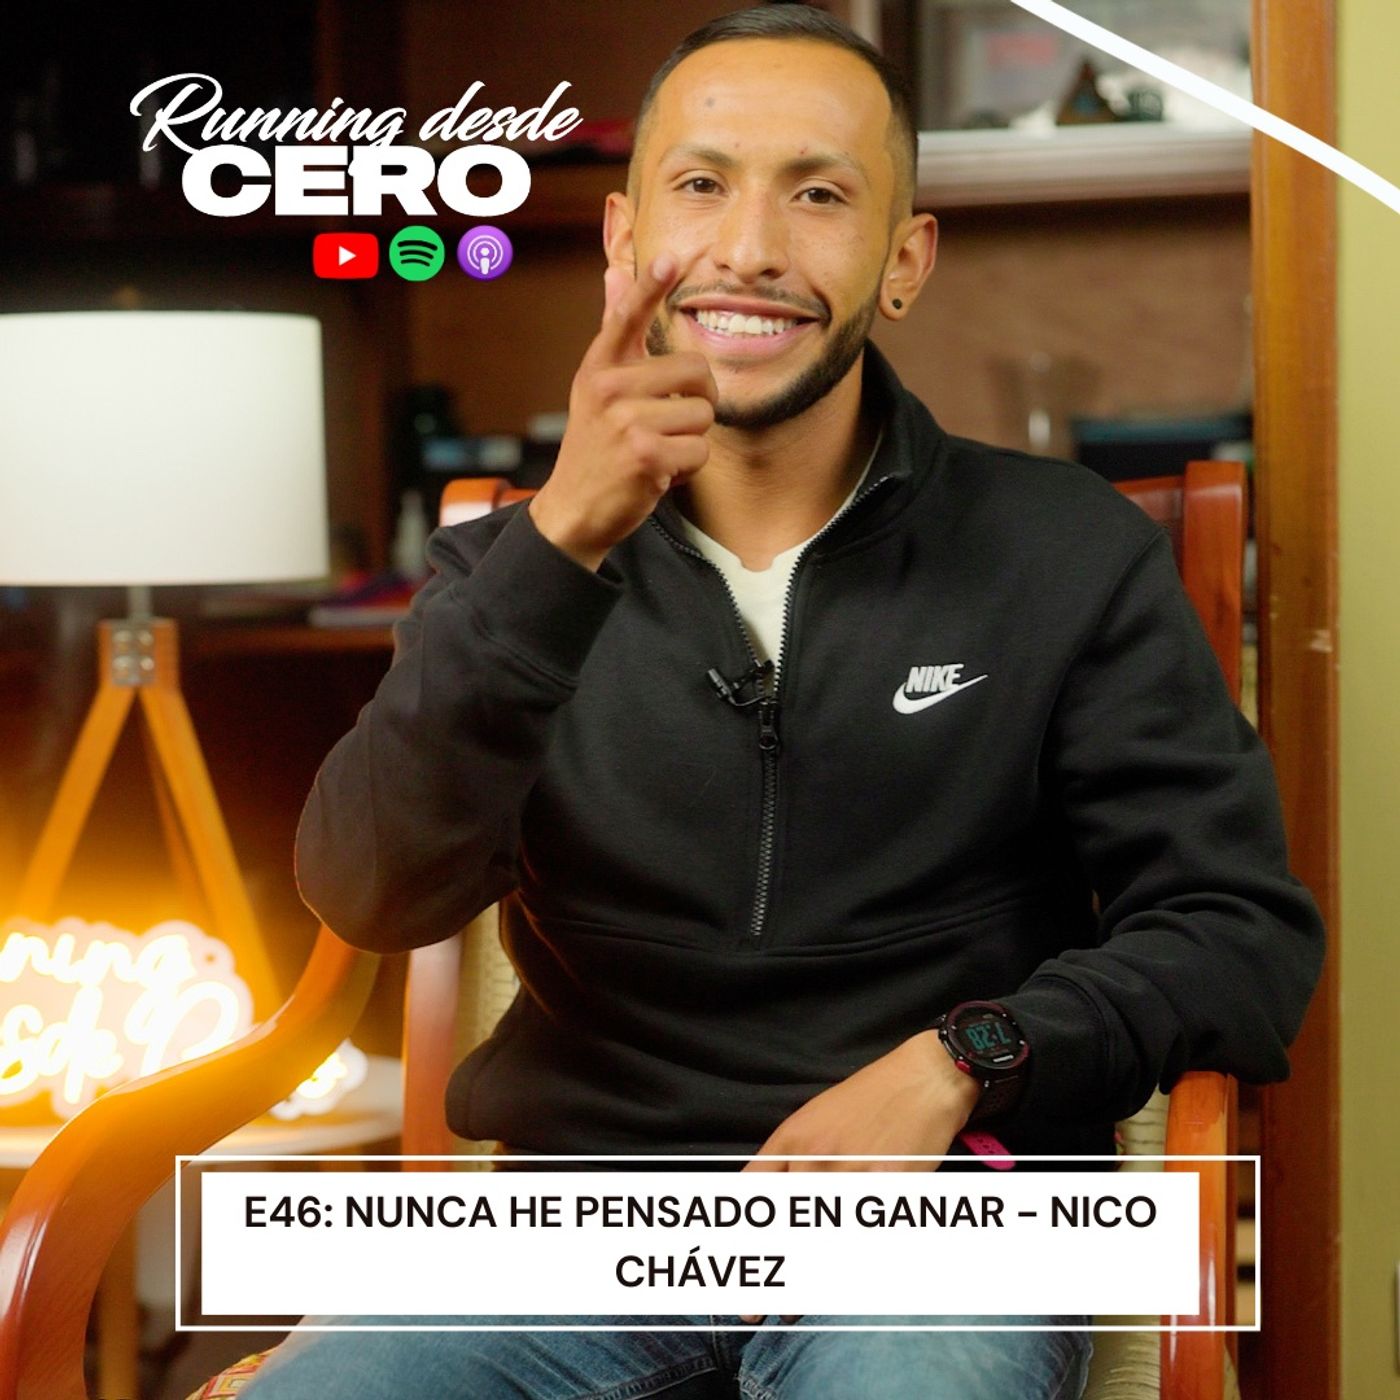 E46: Nunca he pensado en ganar - Nico Chávez